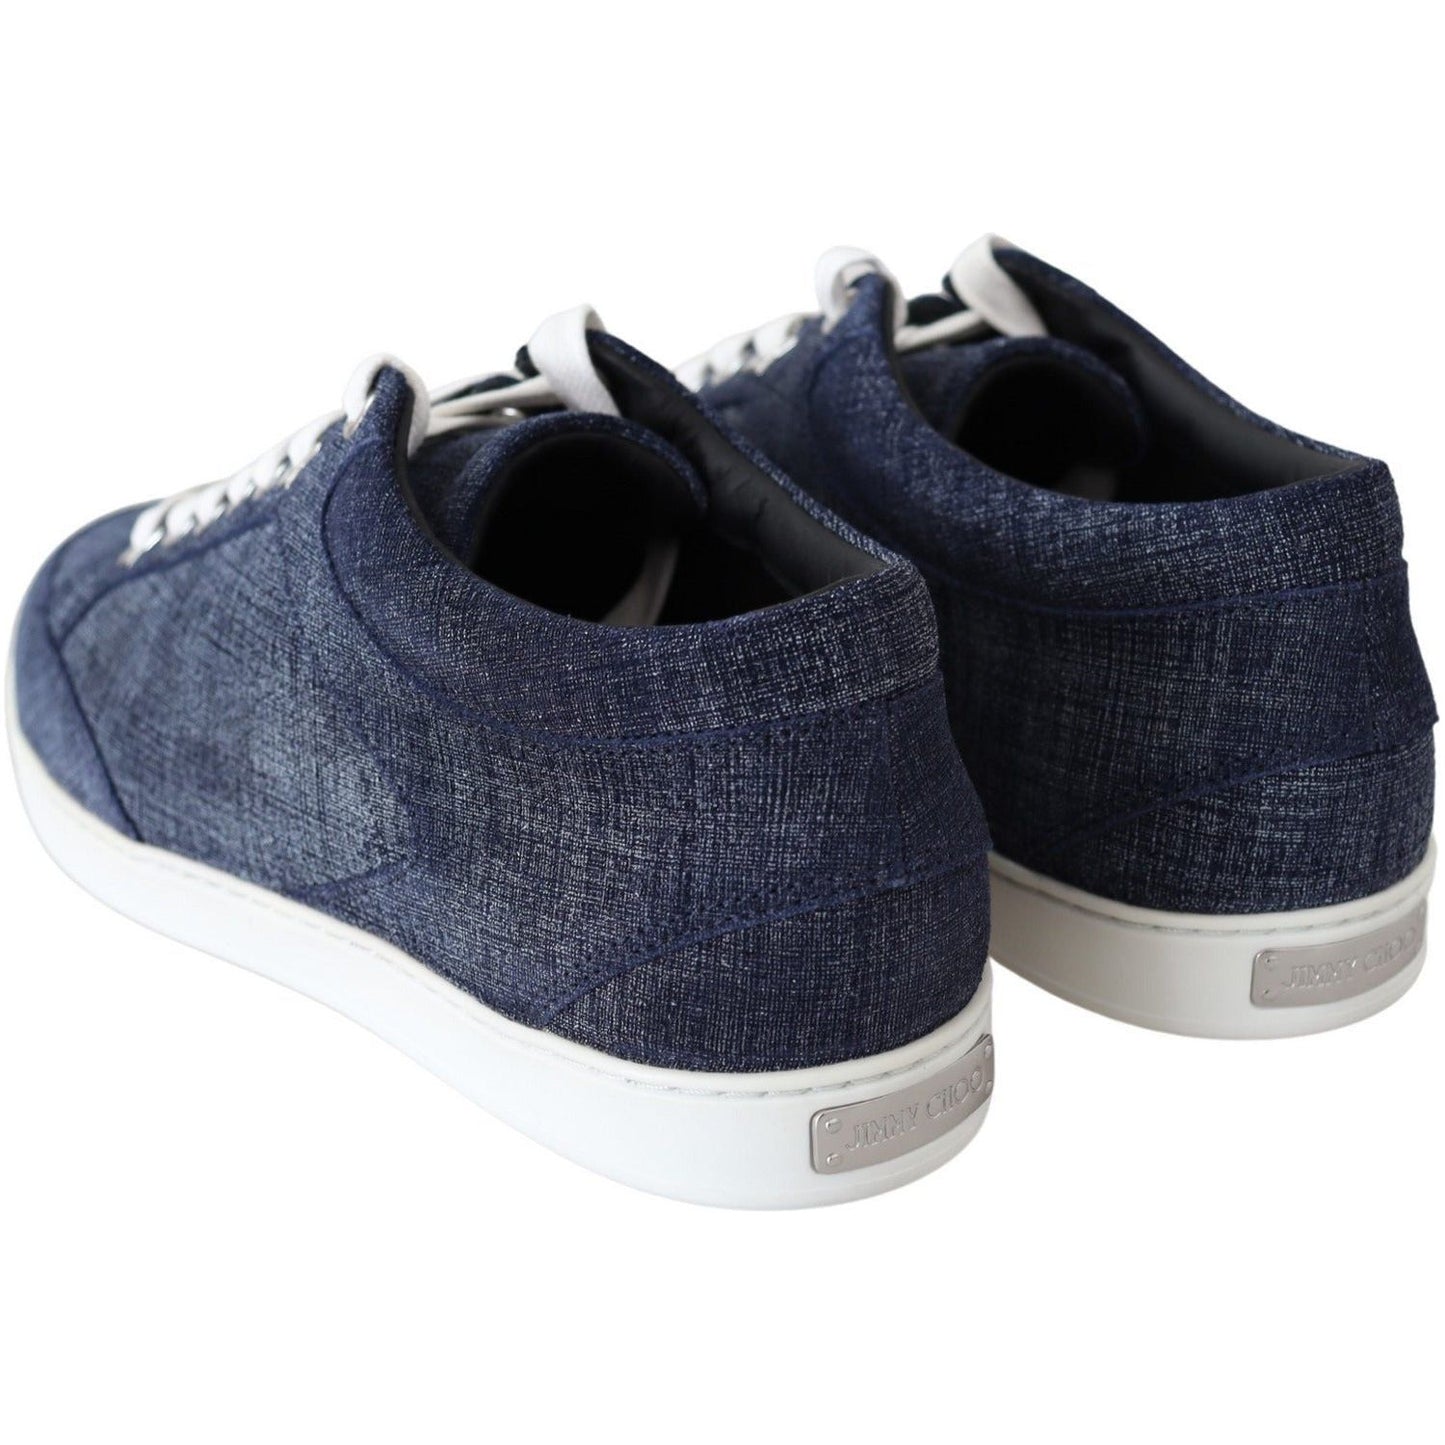 Jimmy Choo Chic Slip-On Blue Denim Suede Sneakers miami-blue-denim-sneakers IMG_6830-scaled-6ef917b8-3a3.jpg